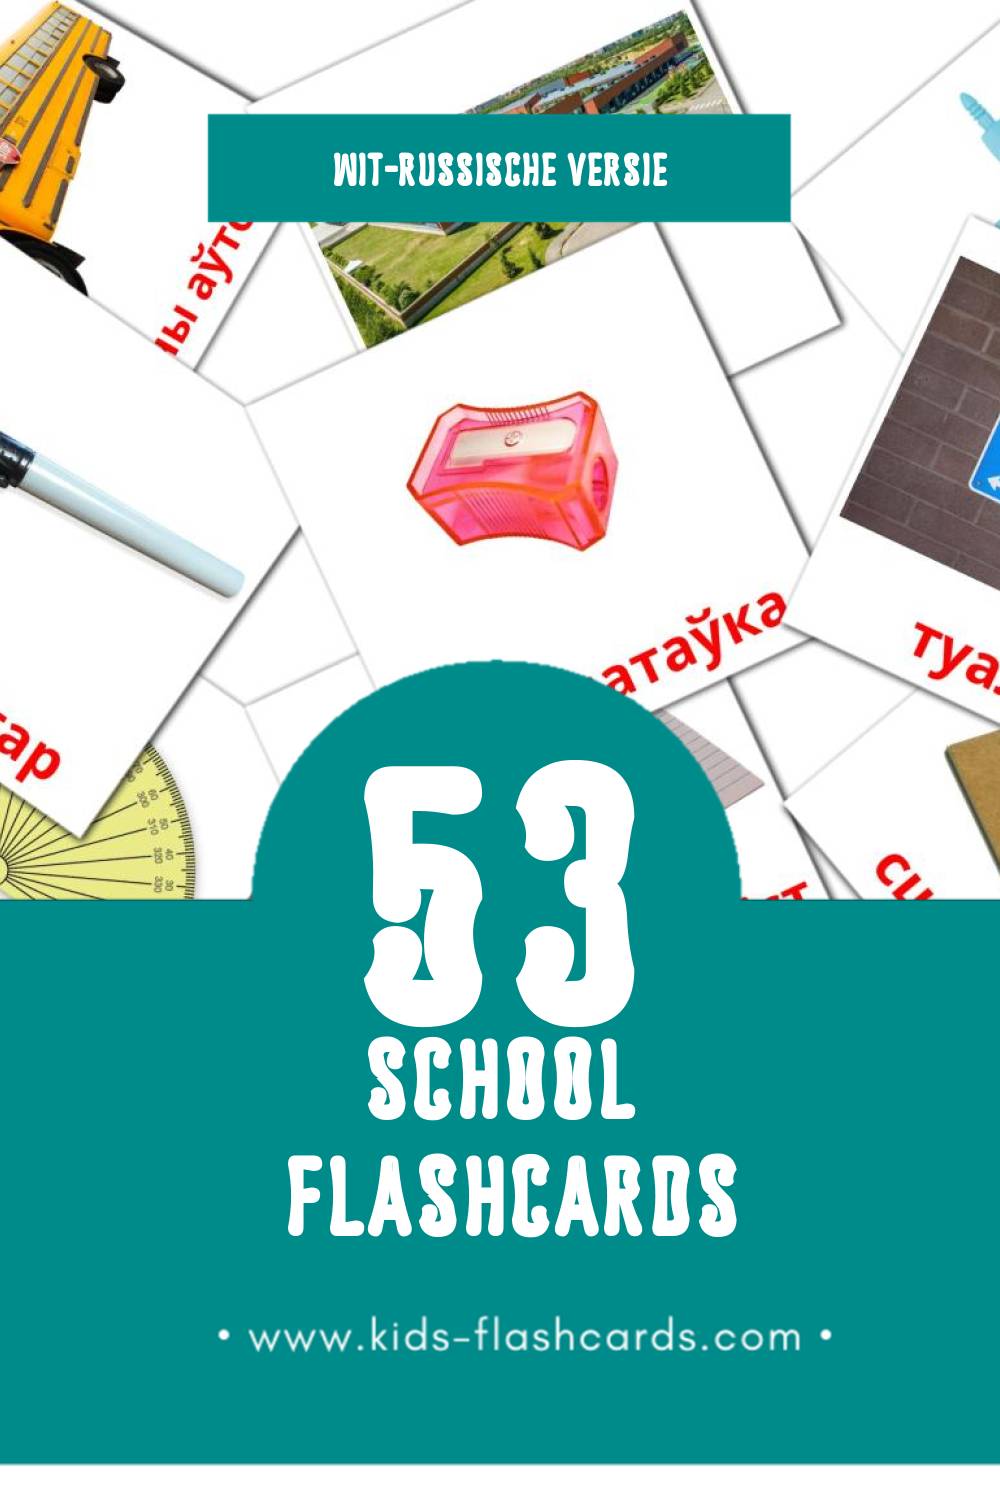 Visuele Школа Flashcards voor Kleuters (53 kaarten in het Wit-russisch)